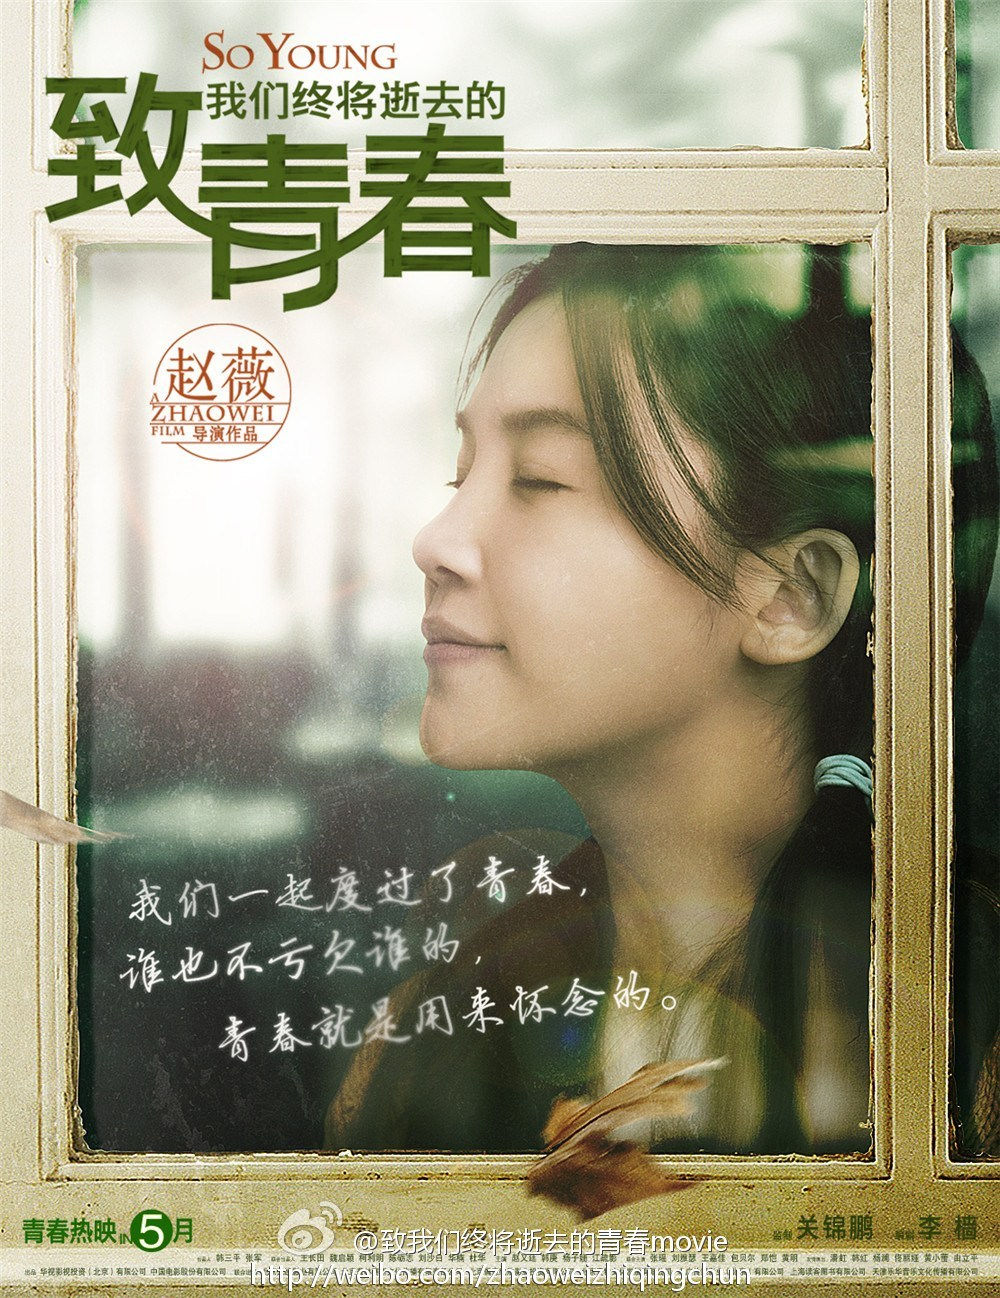  Bộ phim Gửi thanh xuân đánh dấu vai trò mới của Triệu Vy.